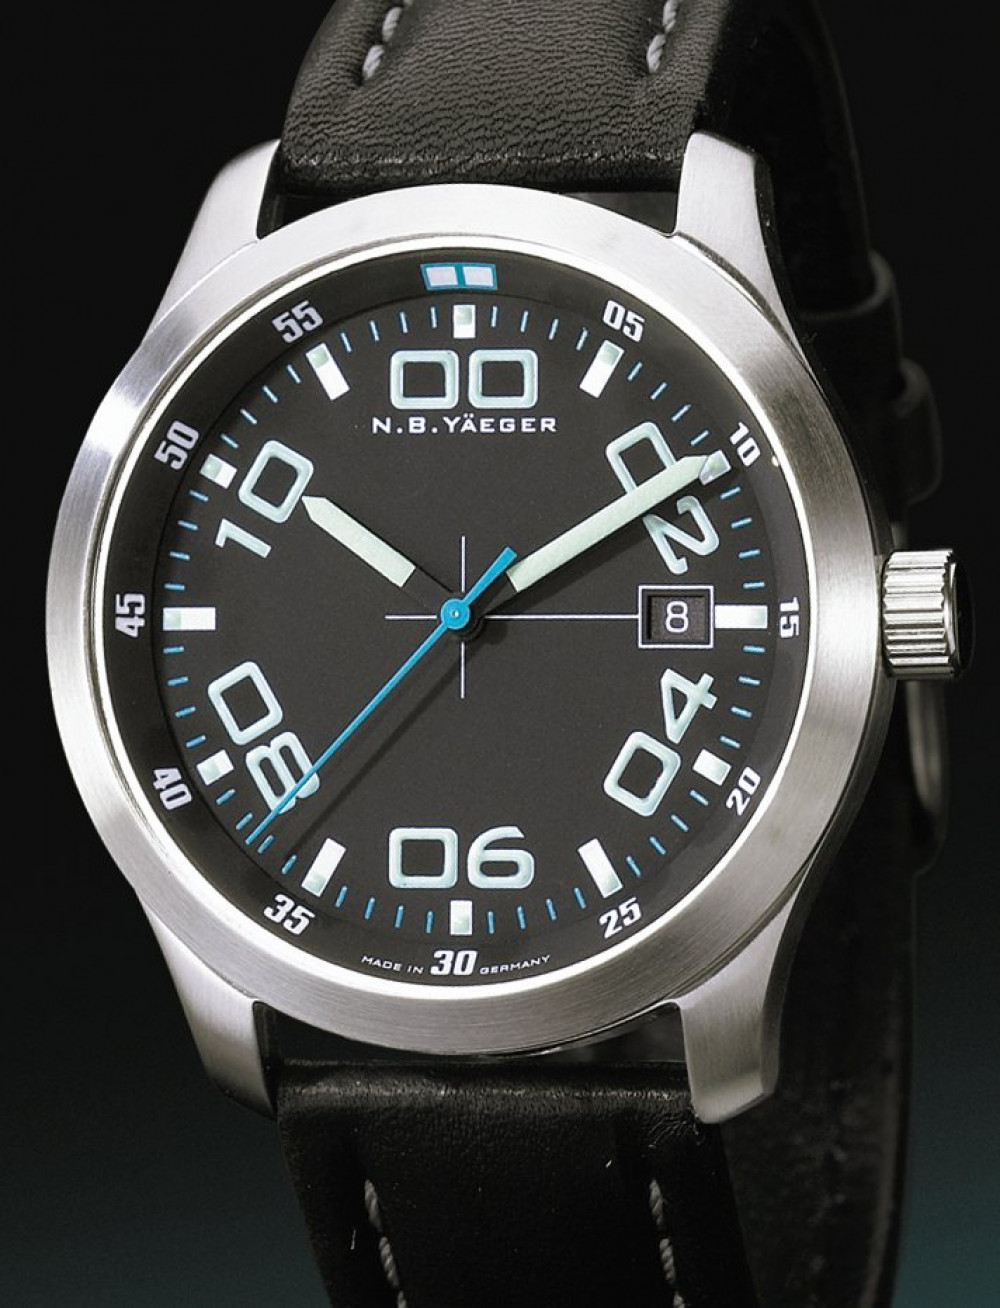 Zegarek firmy N.B. Yäeger , model Delta